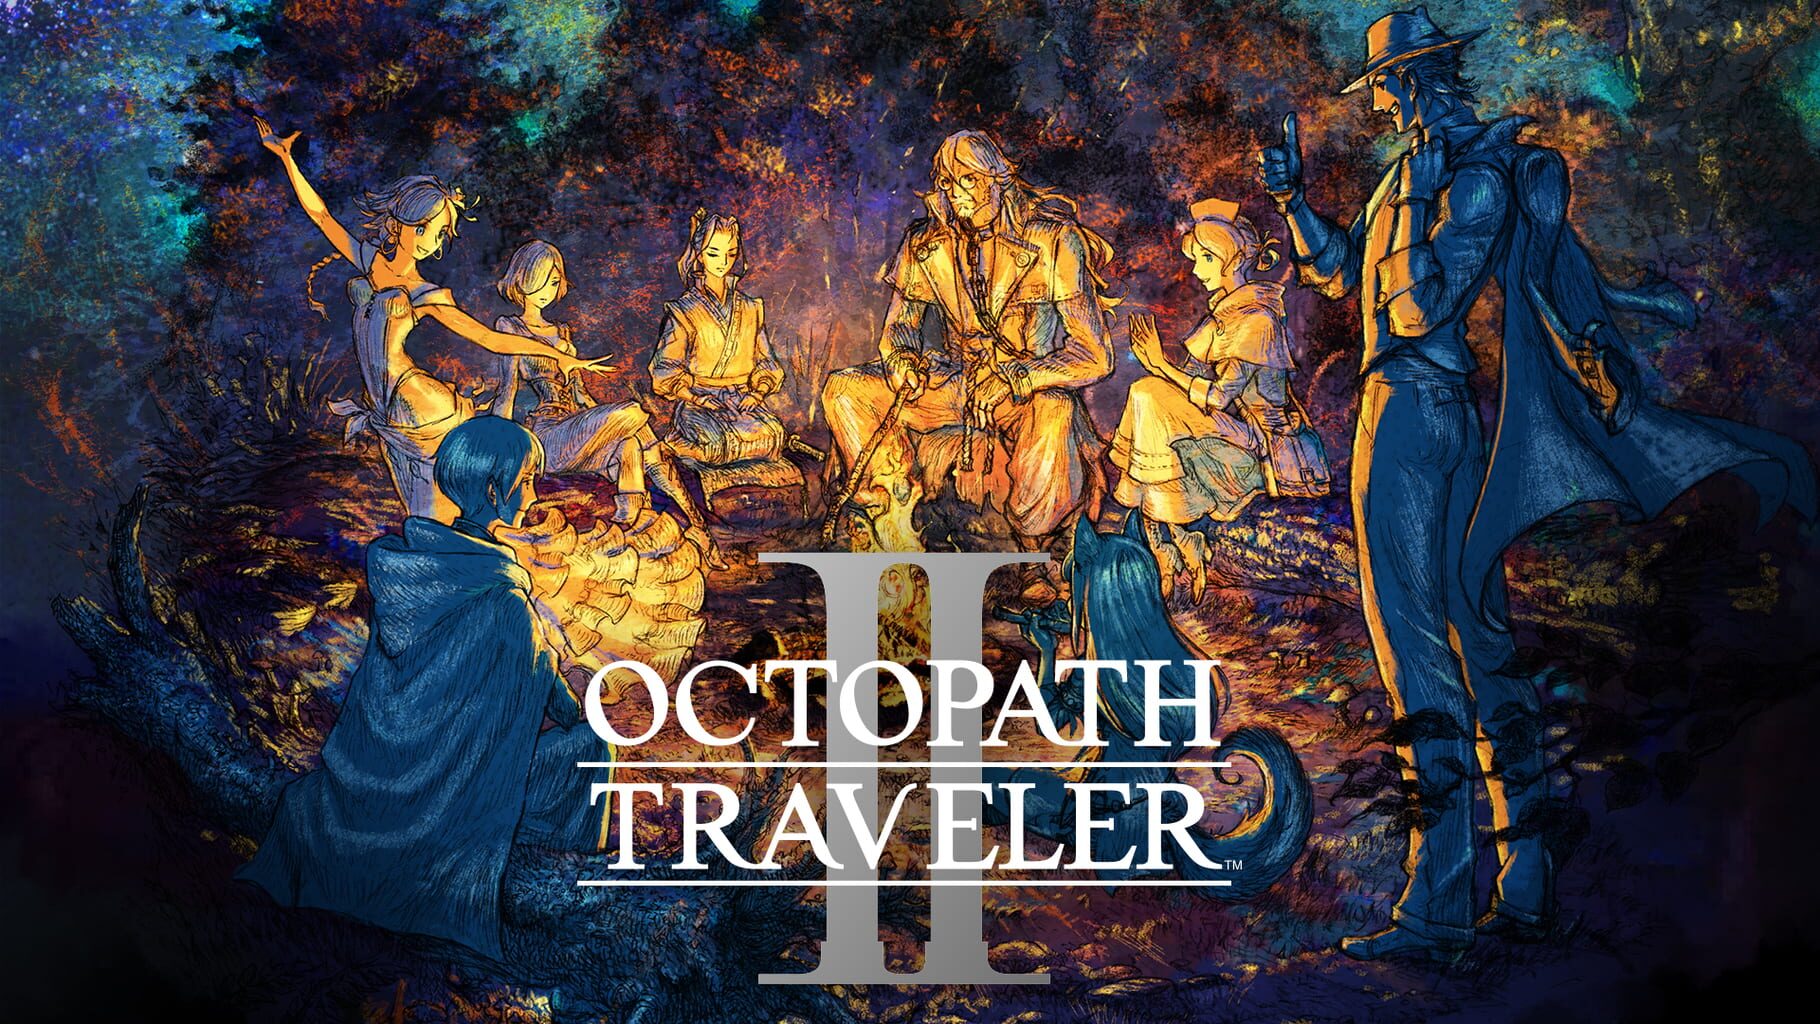 Artwork for Octopath Traveler II